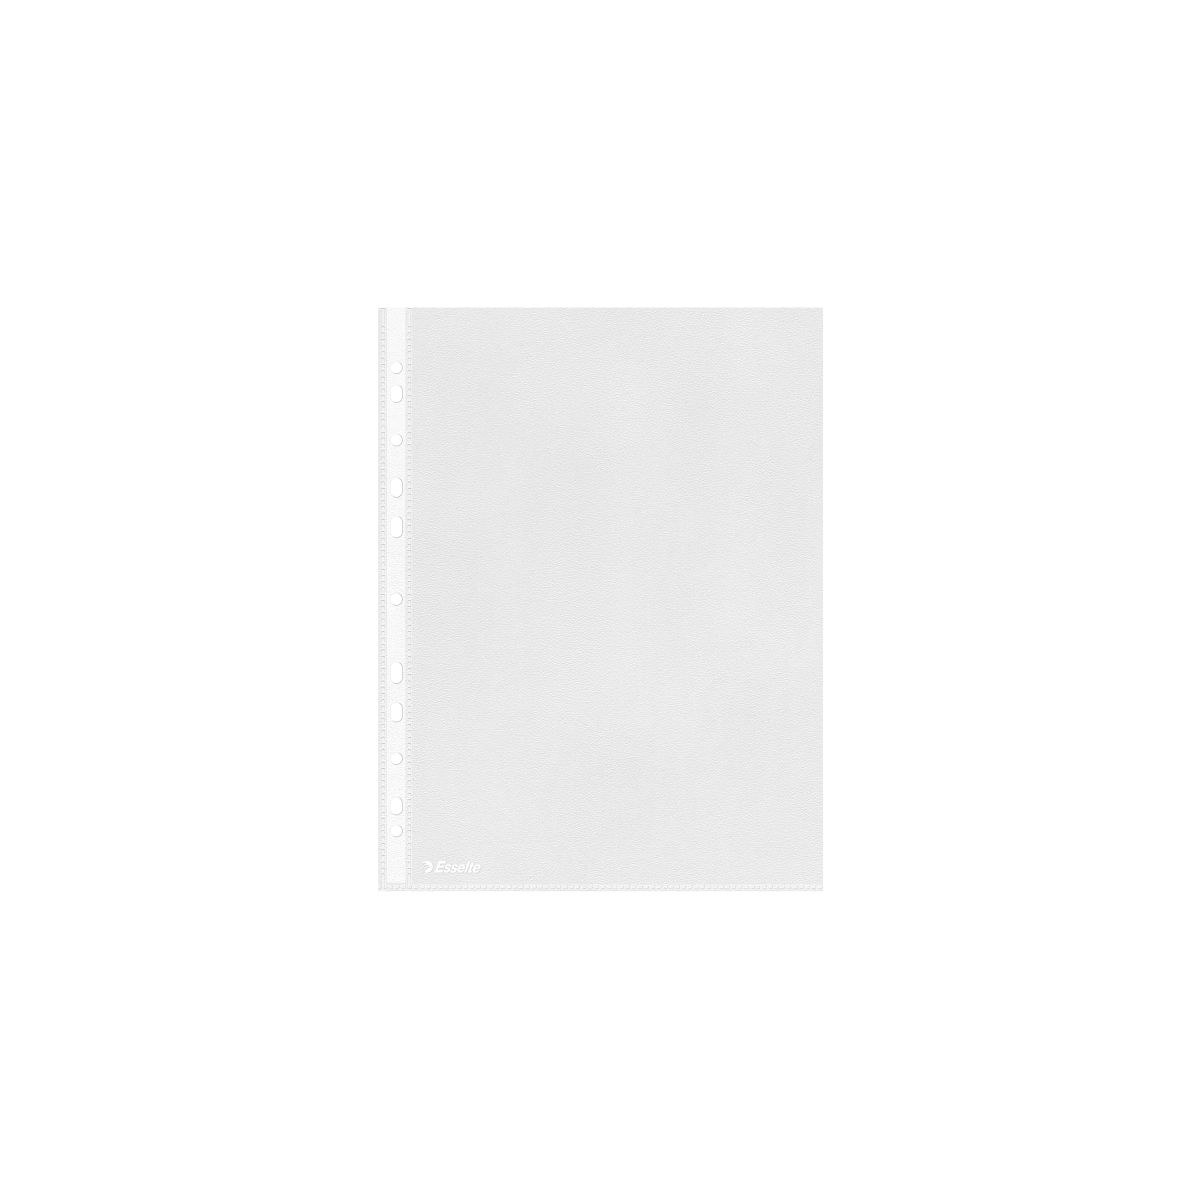 Koszulki na dokumenty Esselte groszkowe A4 kolor: przezroczysty typu U 35 mic. (16690)